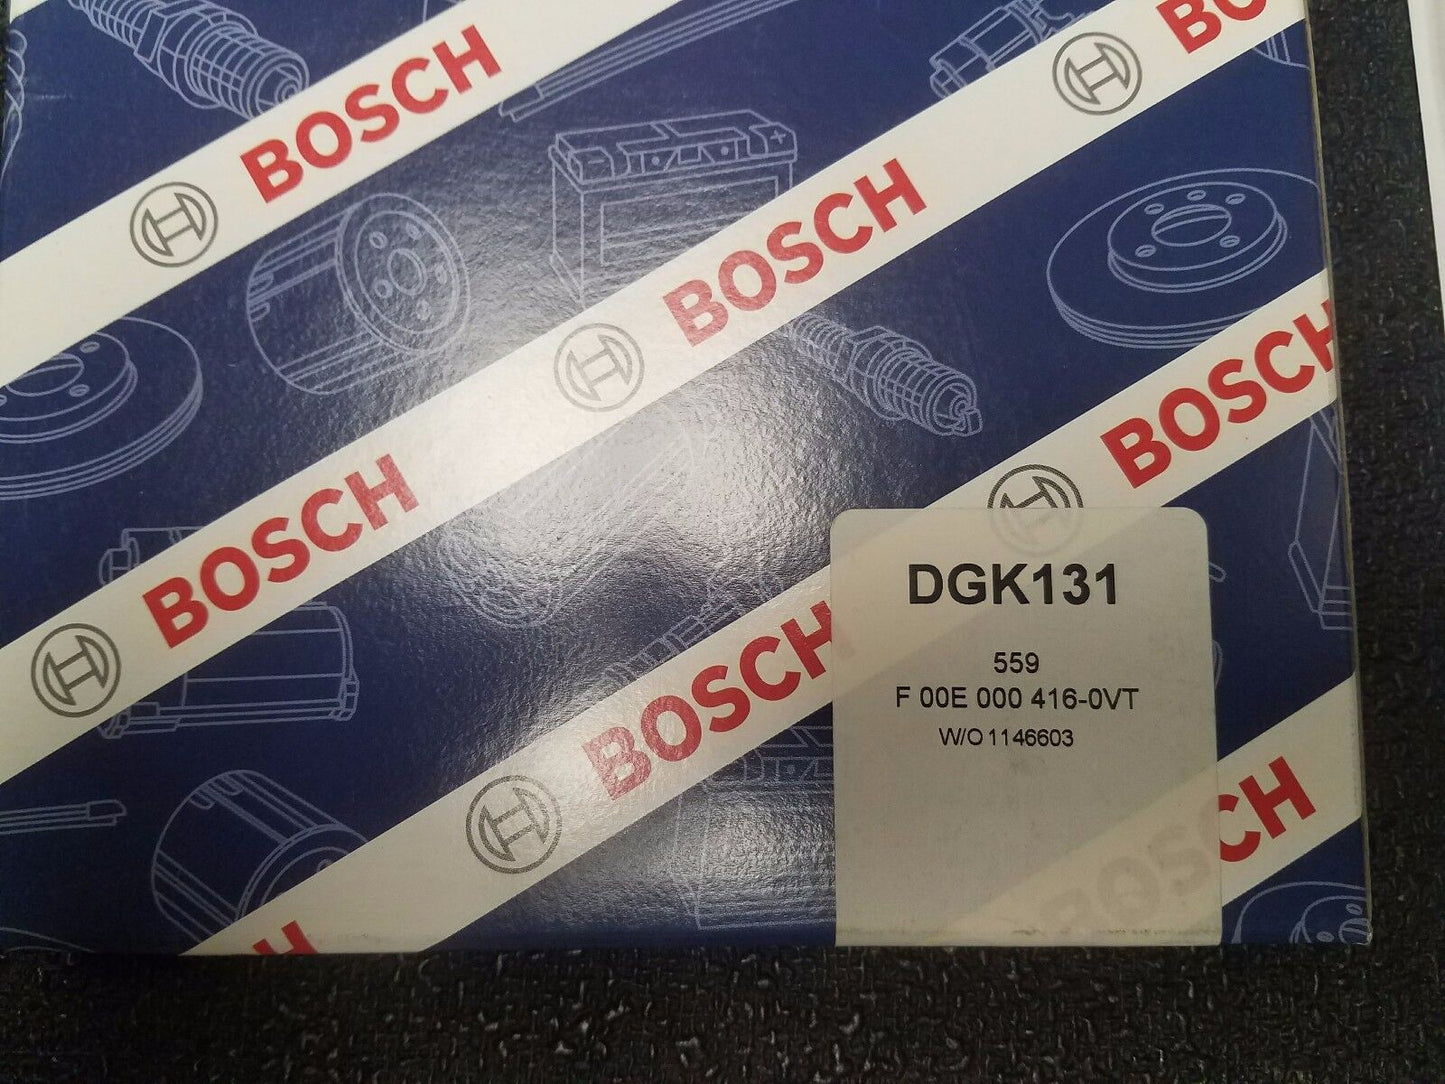 Authentisch Bosch DGK131 Umbau Kit für Dodge Cummins 5.9L P7100 Injection Pumpe